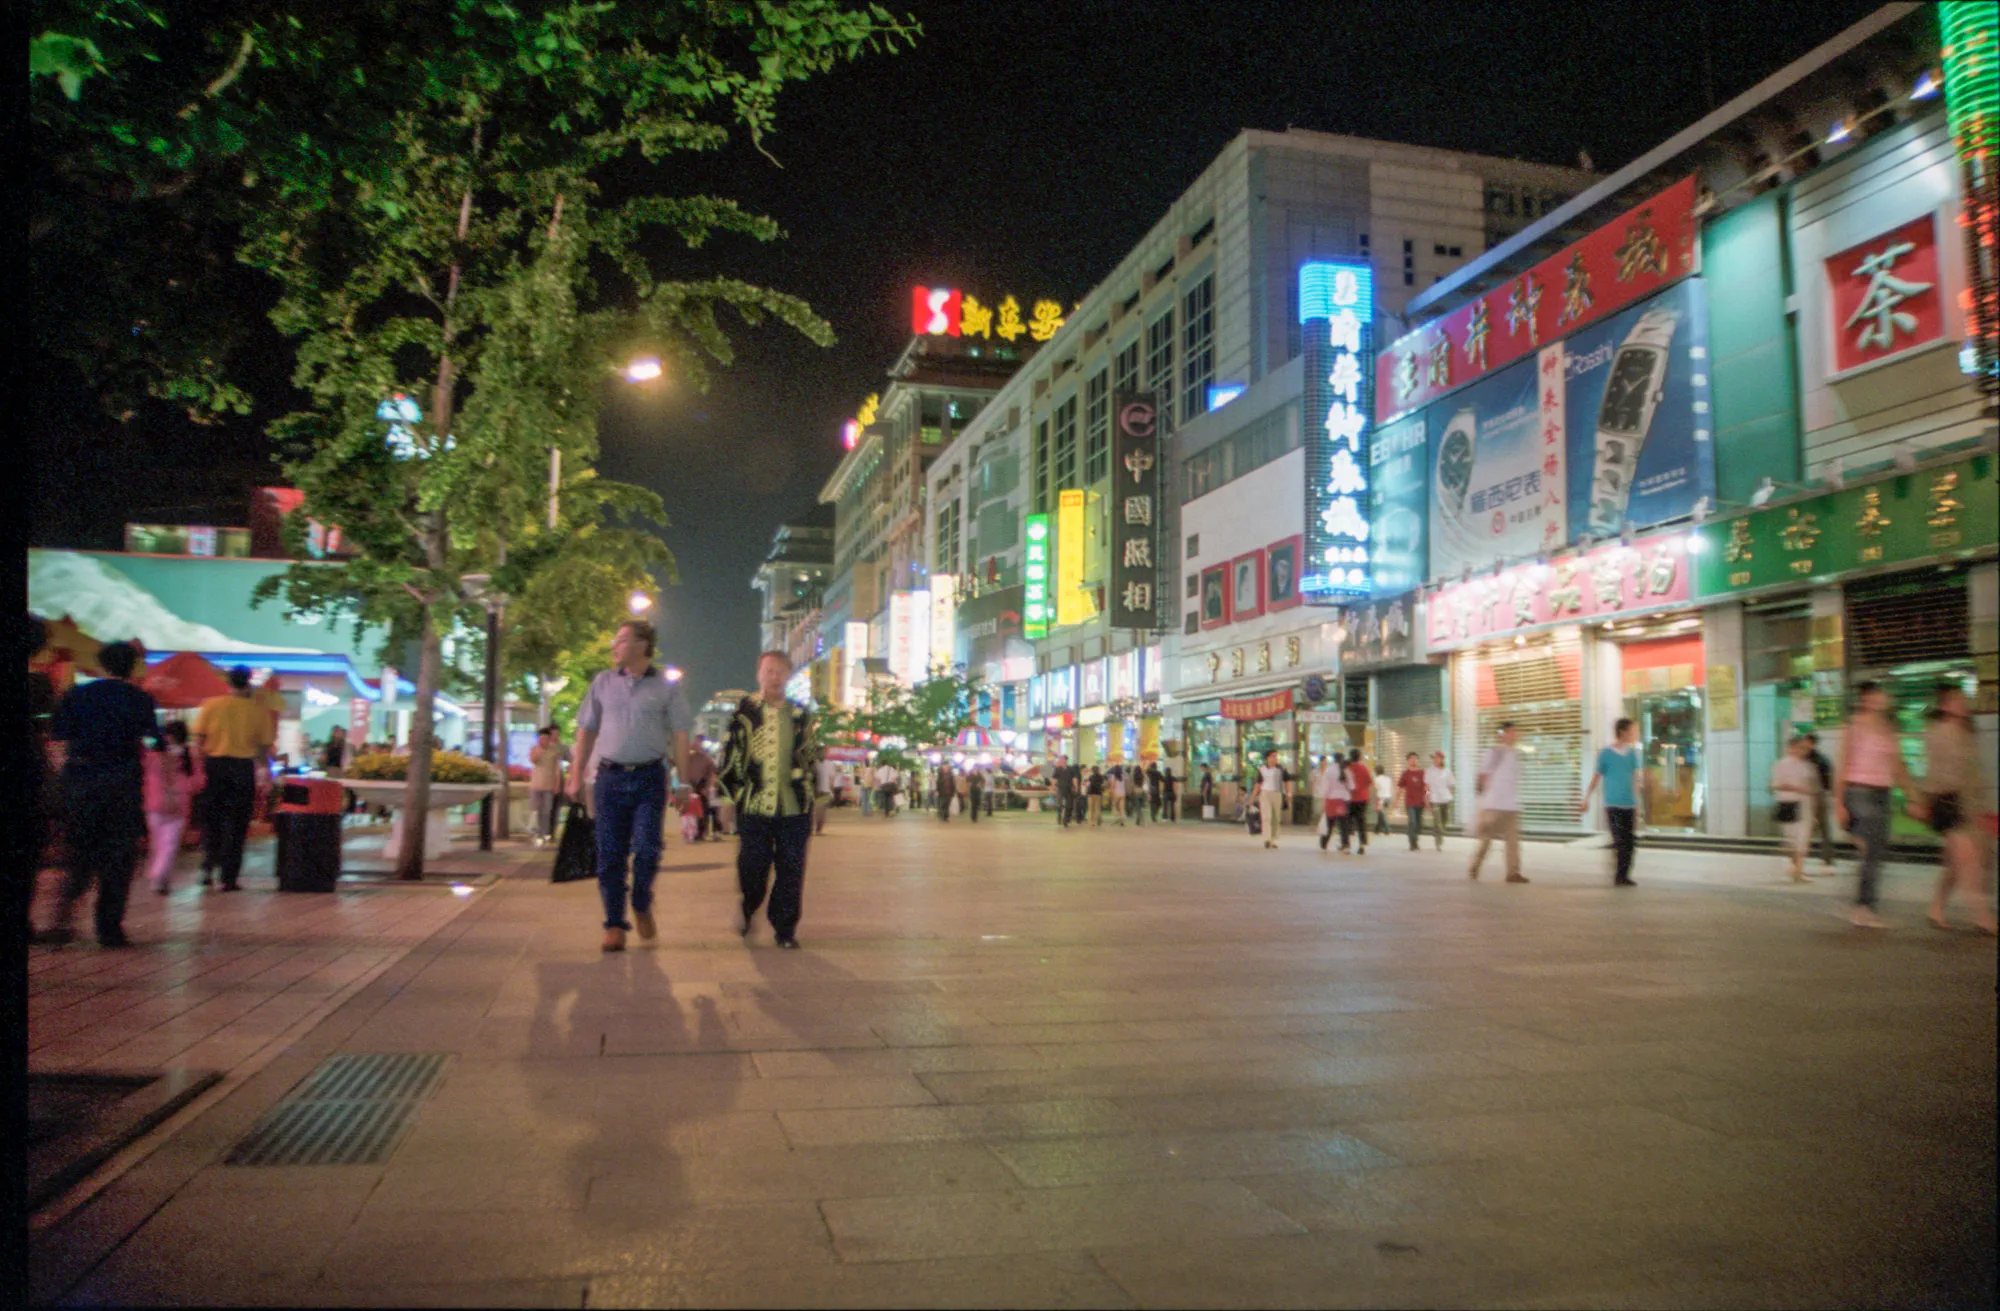 Stores on Wangfujing Avenue